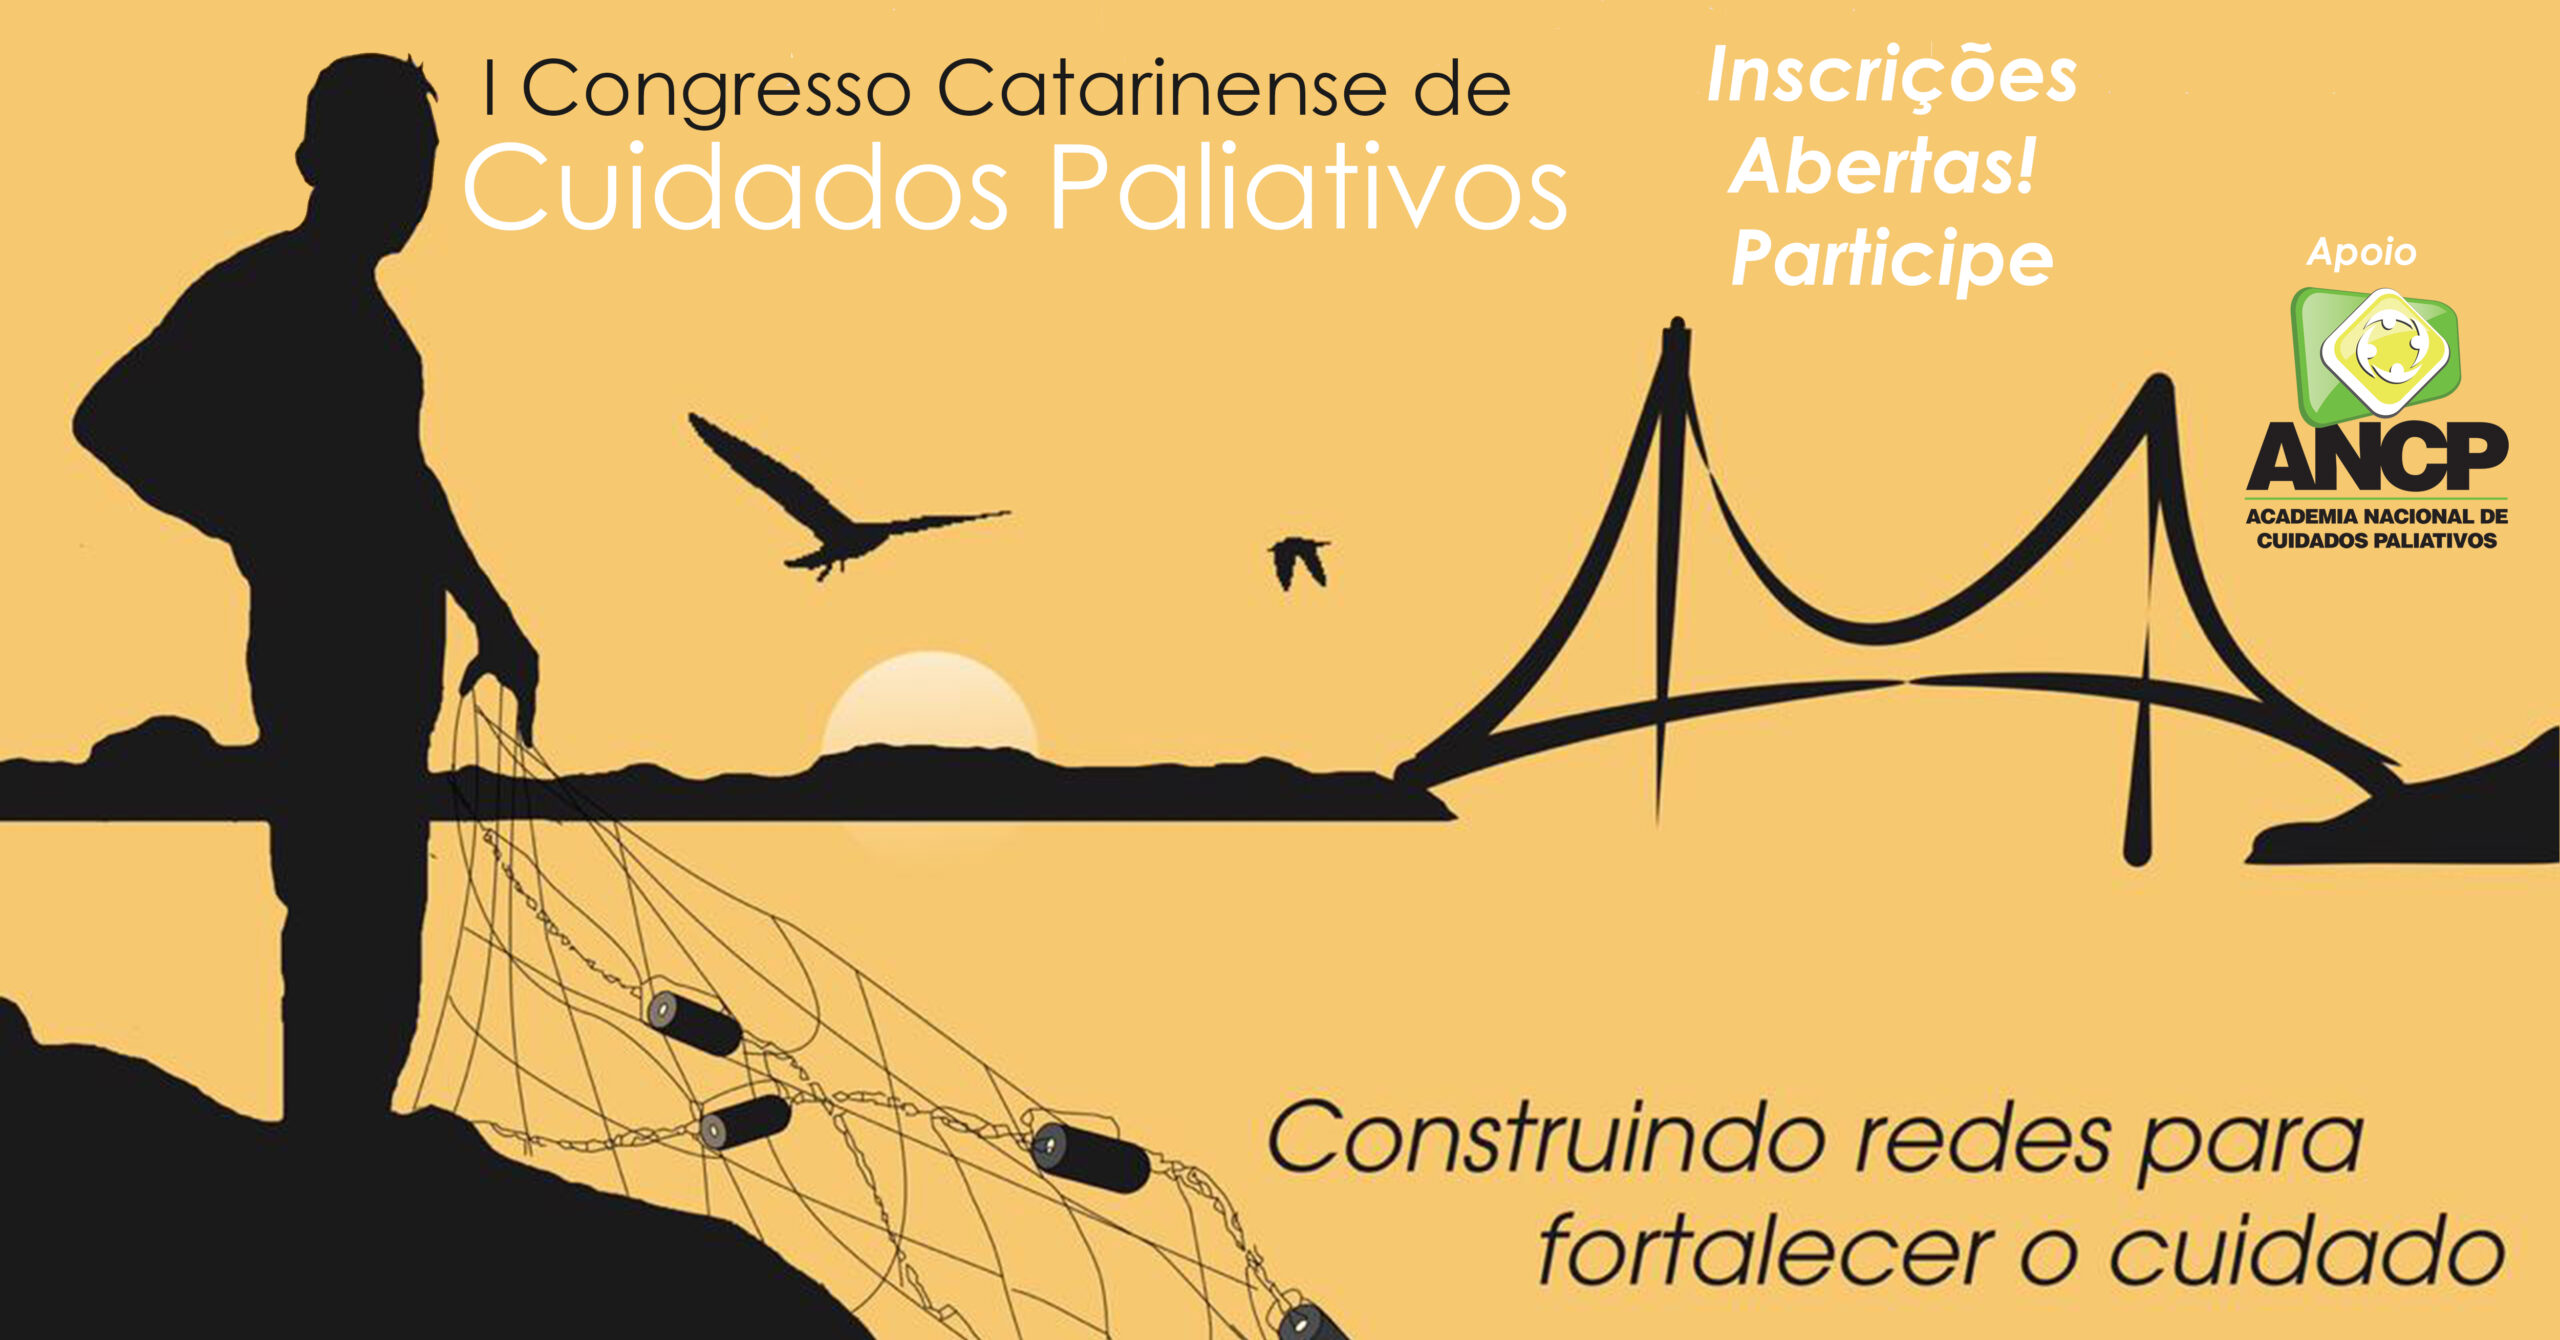 I Congresso Catarinense de Cuidados Paliativos está com inscrições abertas!